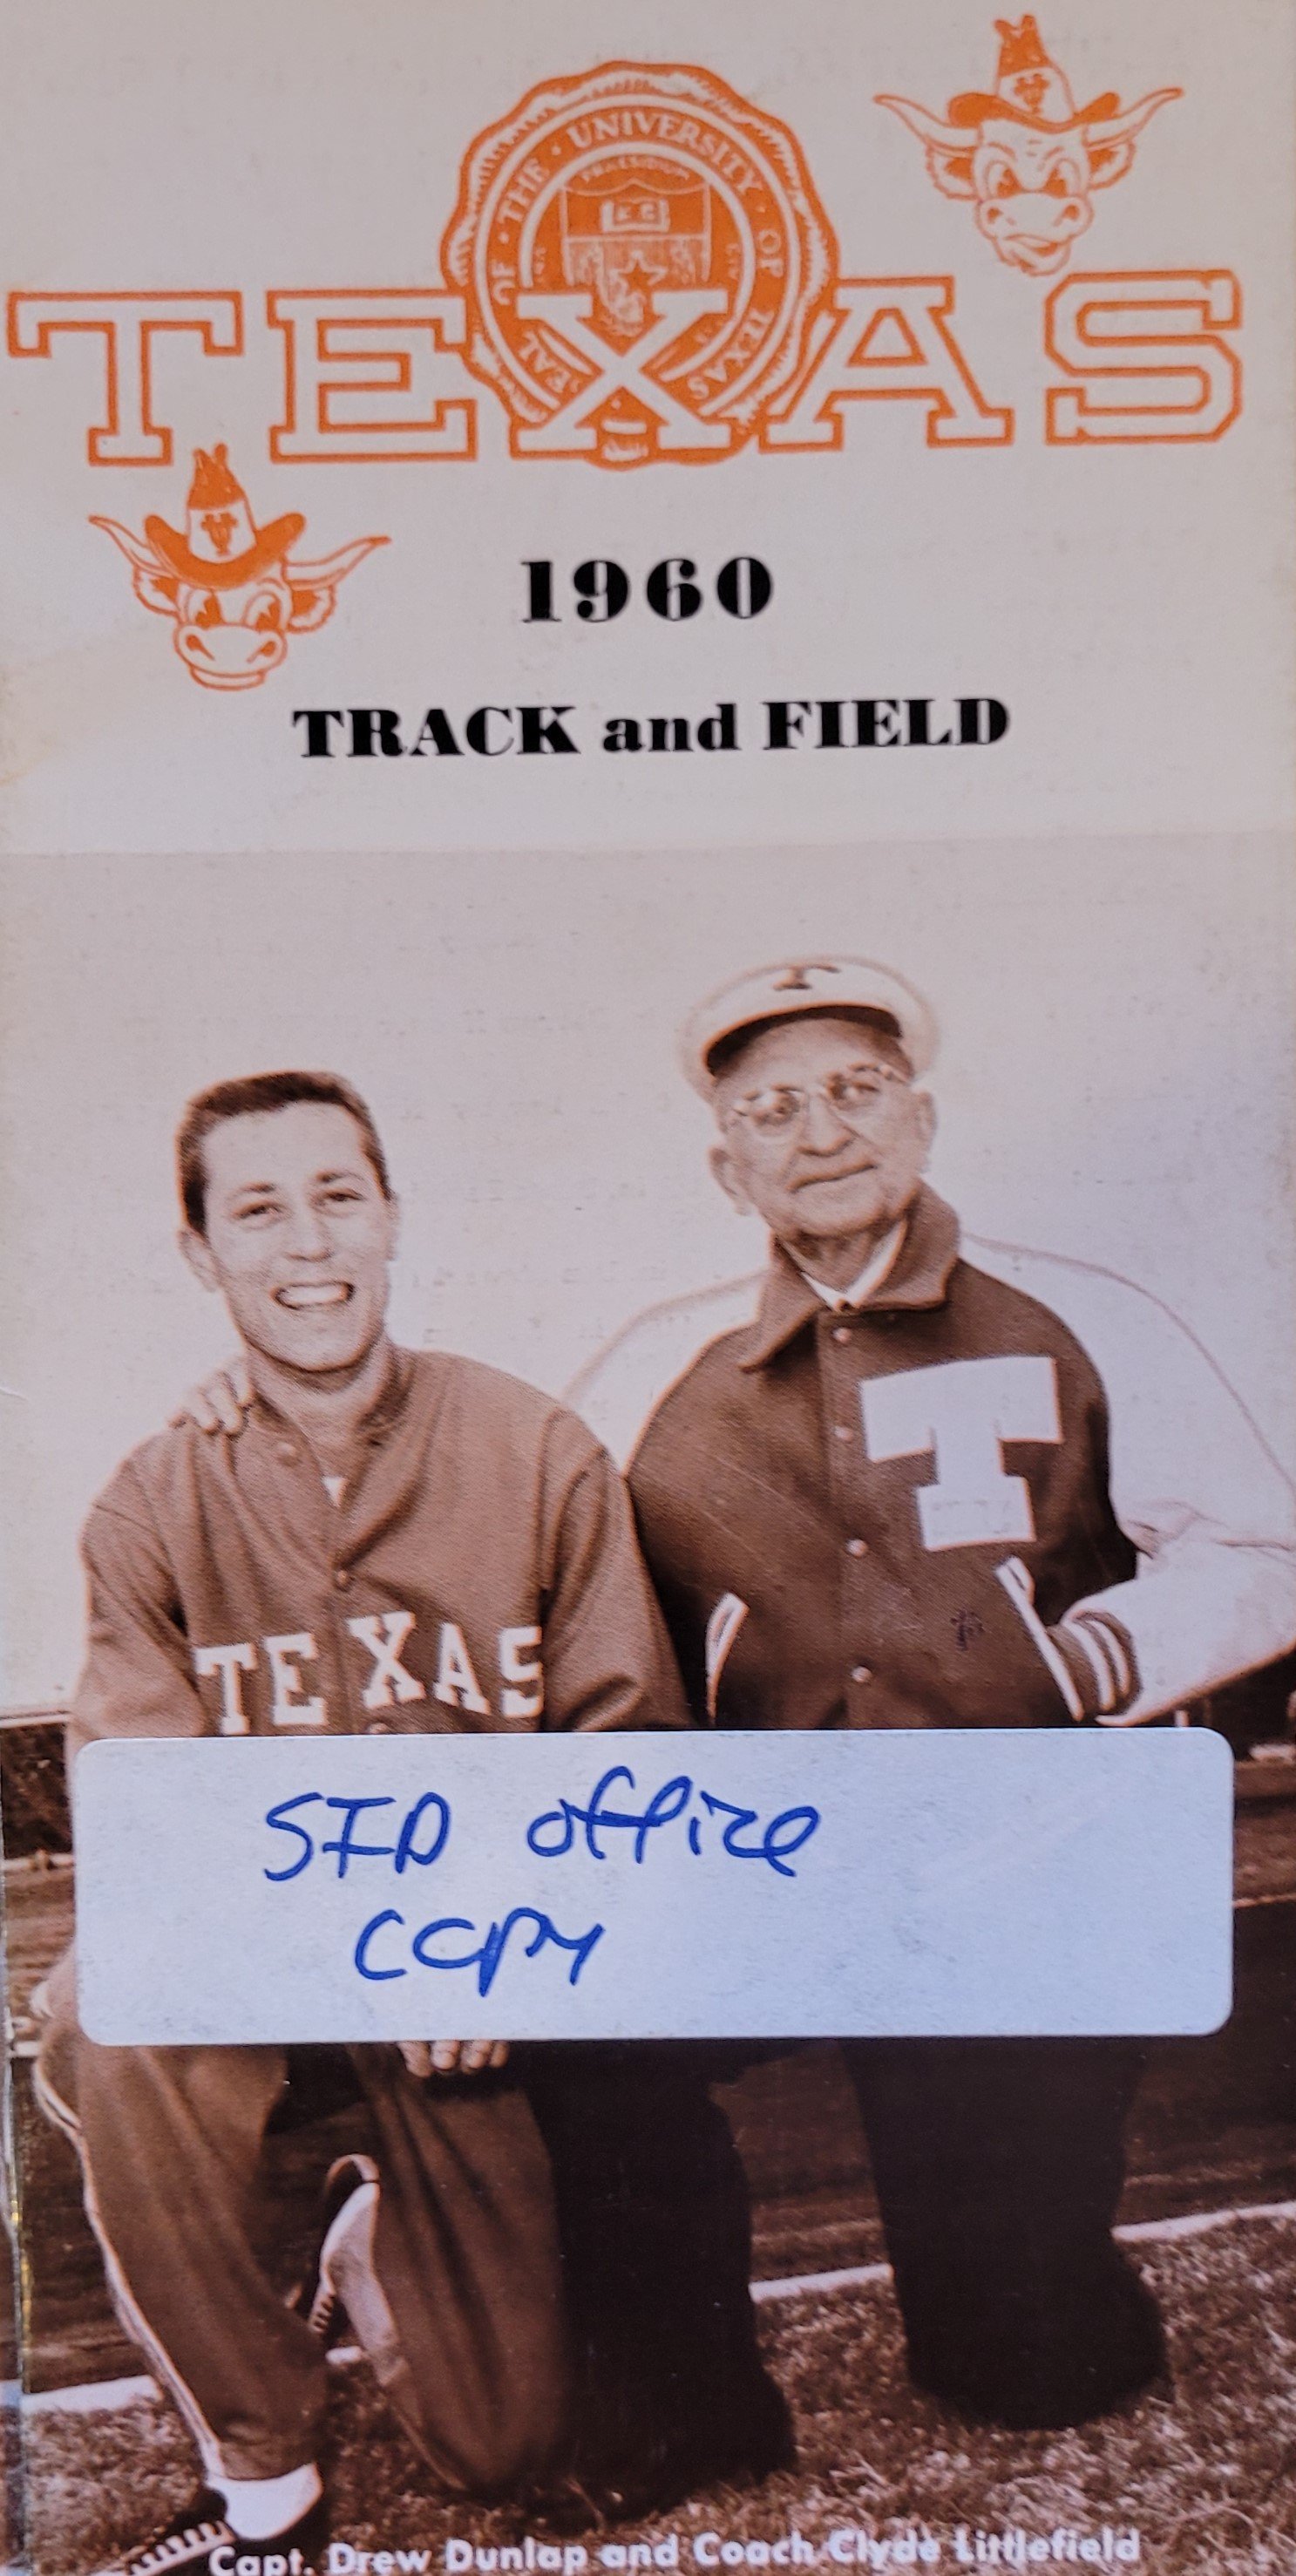 1960 men's track Drew Dunlap , Clyde Littlefield.jpg